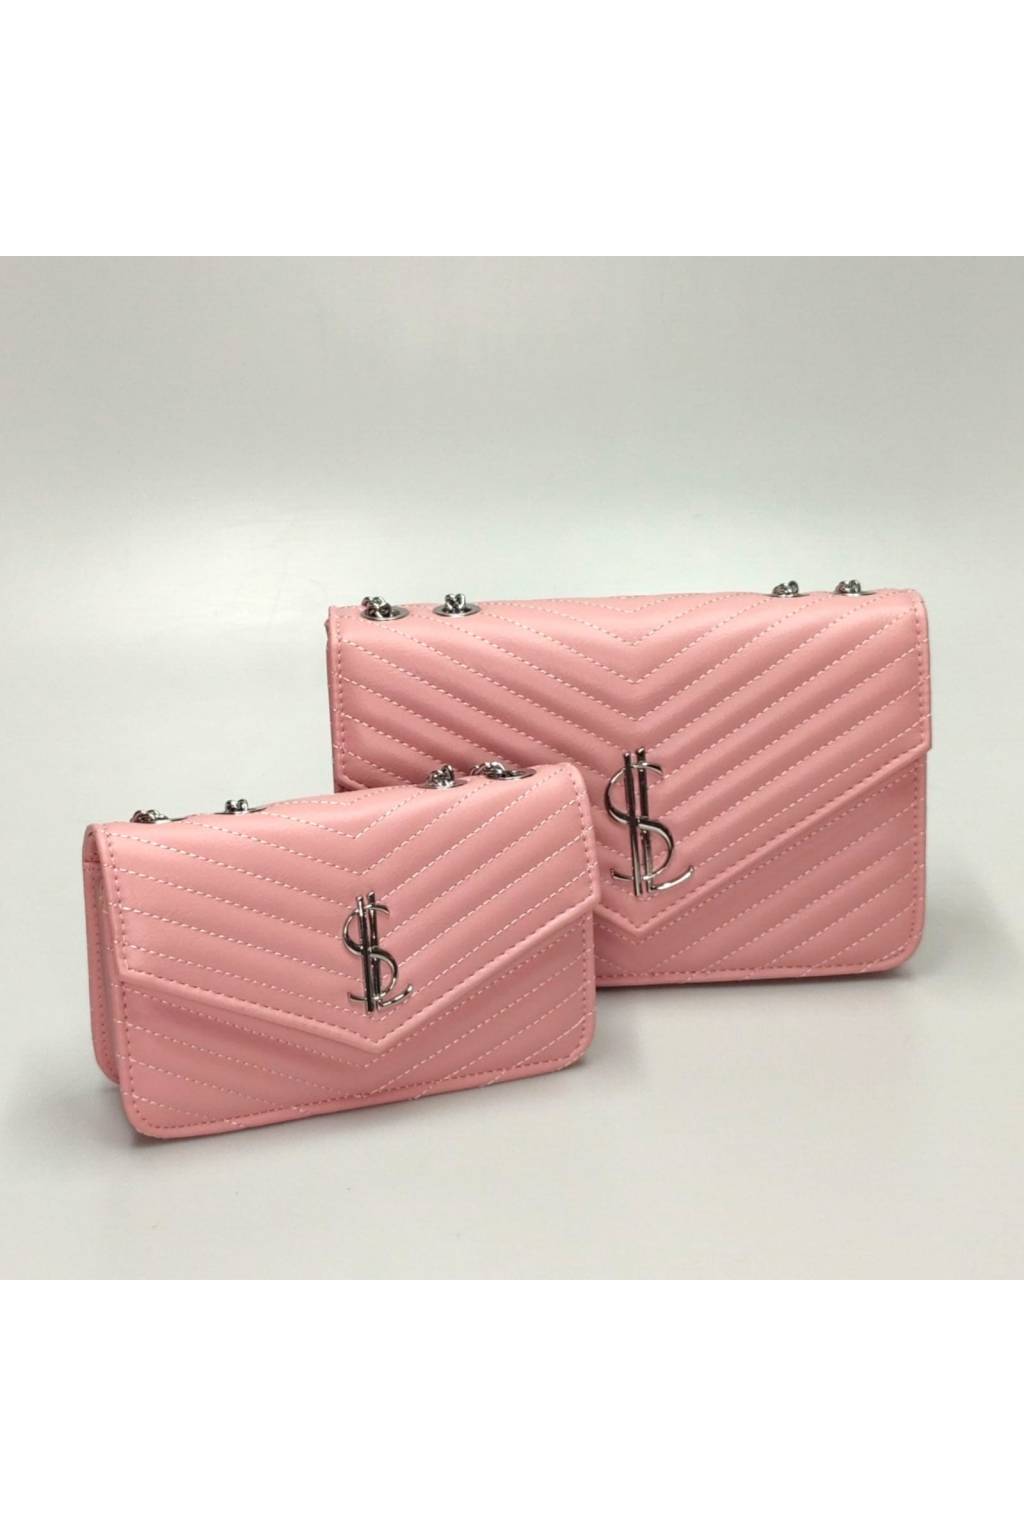 Set dámskych kabeliek ML 185 svetlo ružový www.kabelky vypredaj (35)